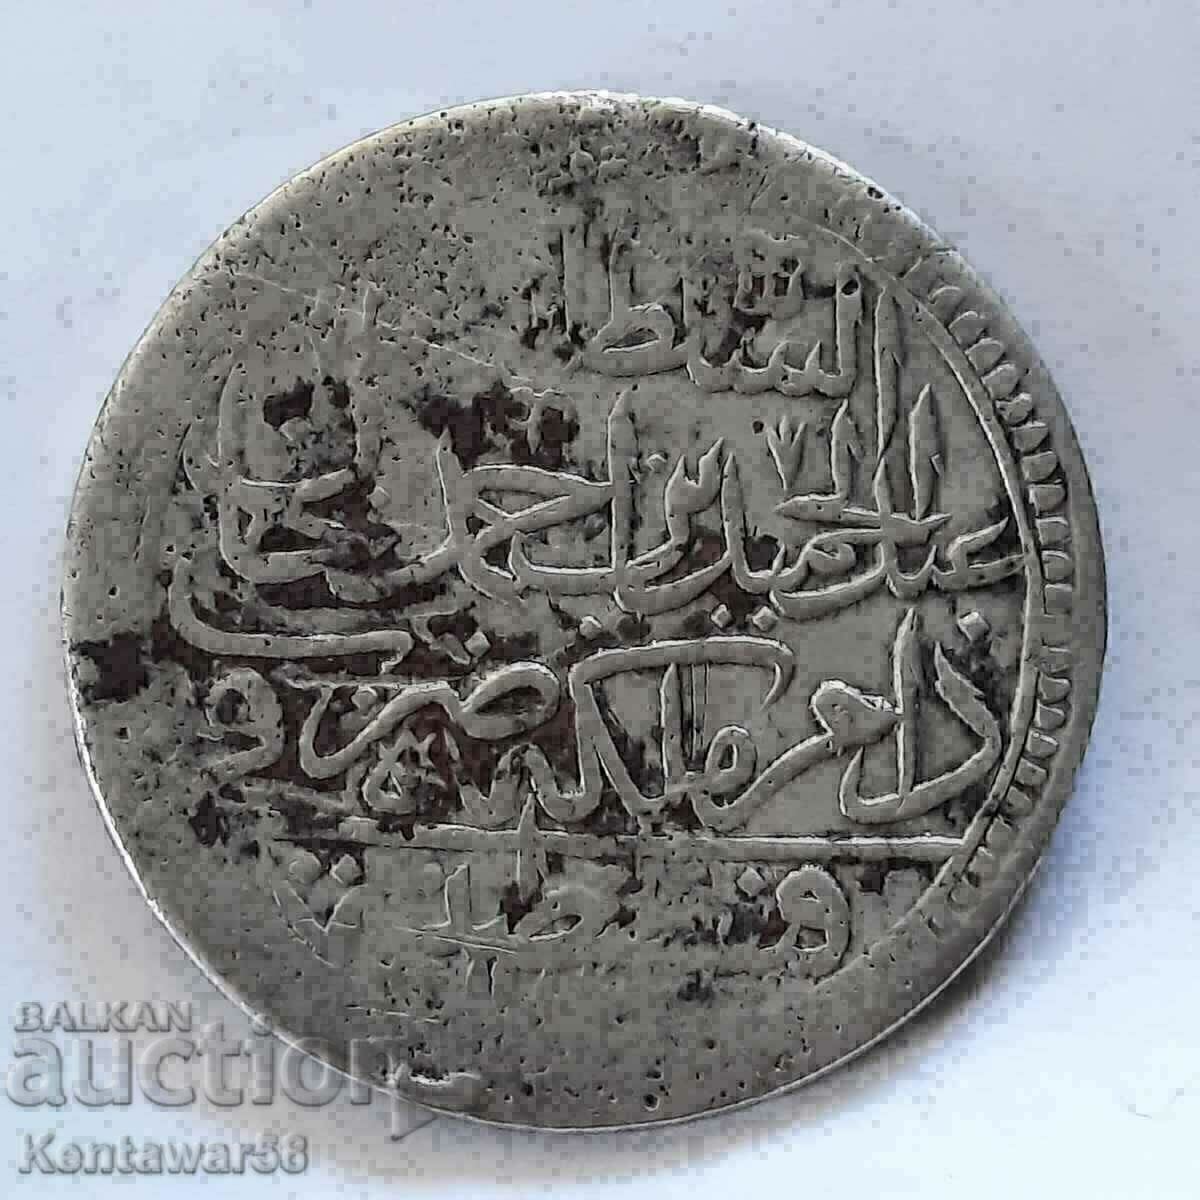 Османска империя 60 пари (2 золота) 1187/15 сребро.